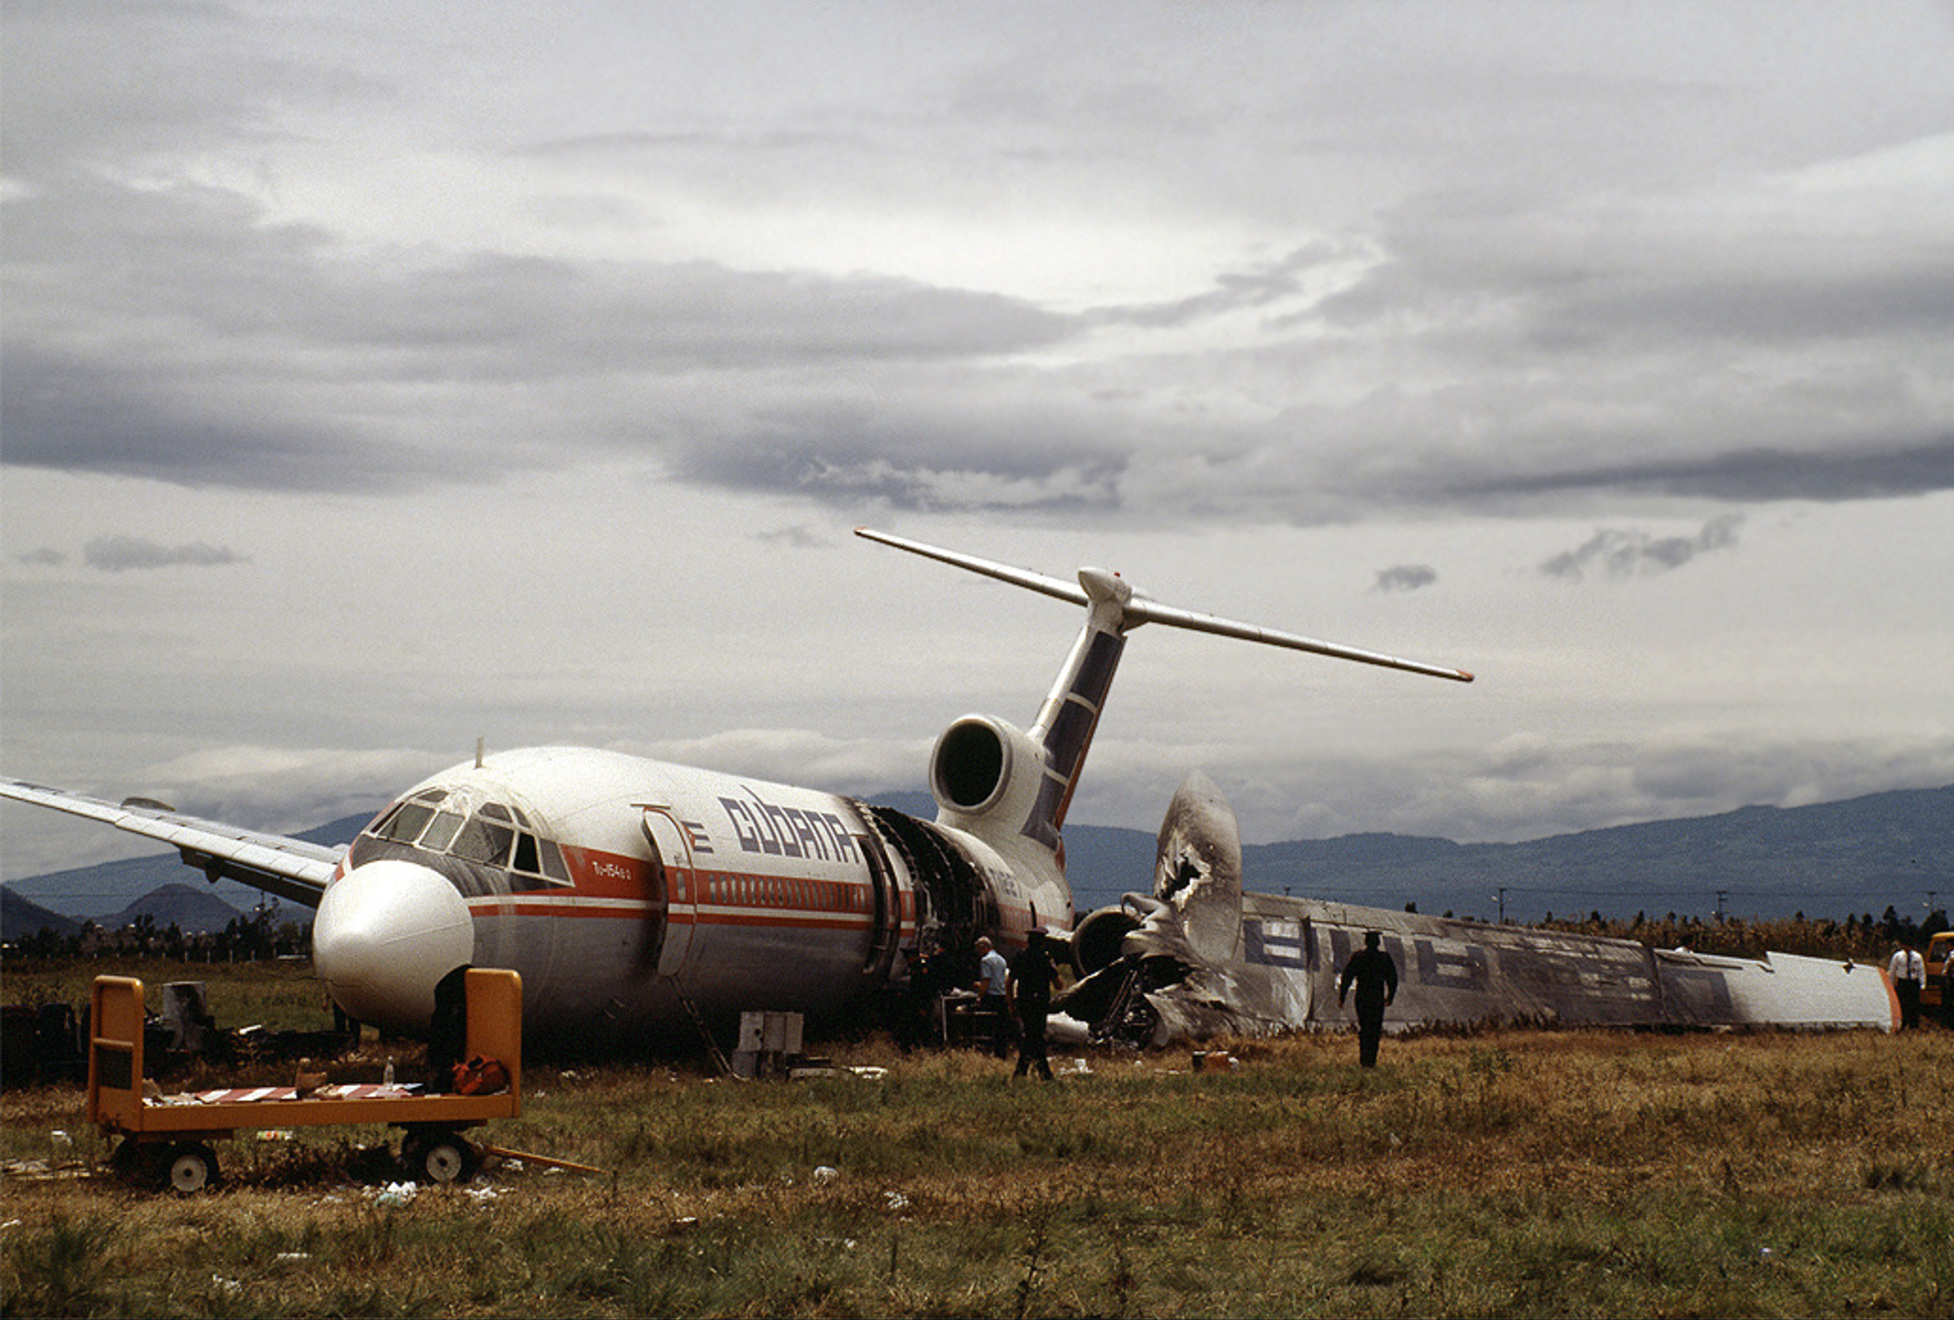 Rusların uçan tabut lakaplı uçağı: Tupolev TU-154 yine düştü!